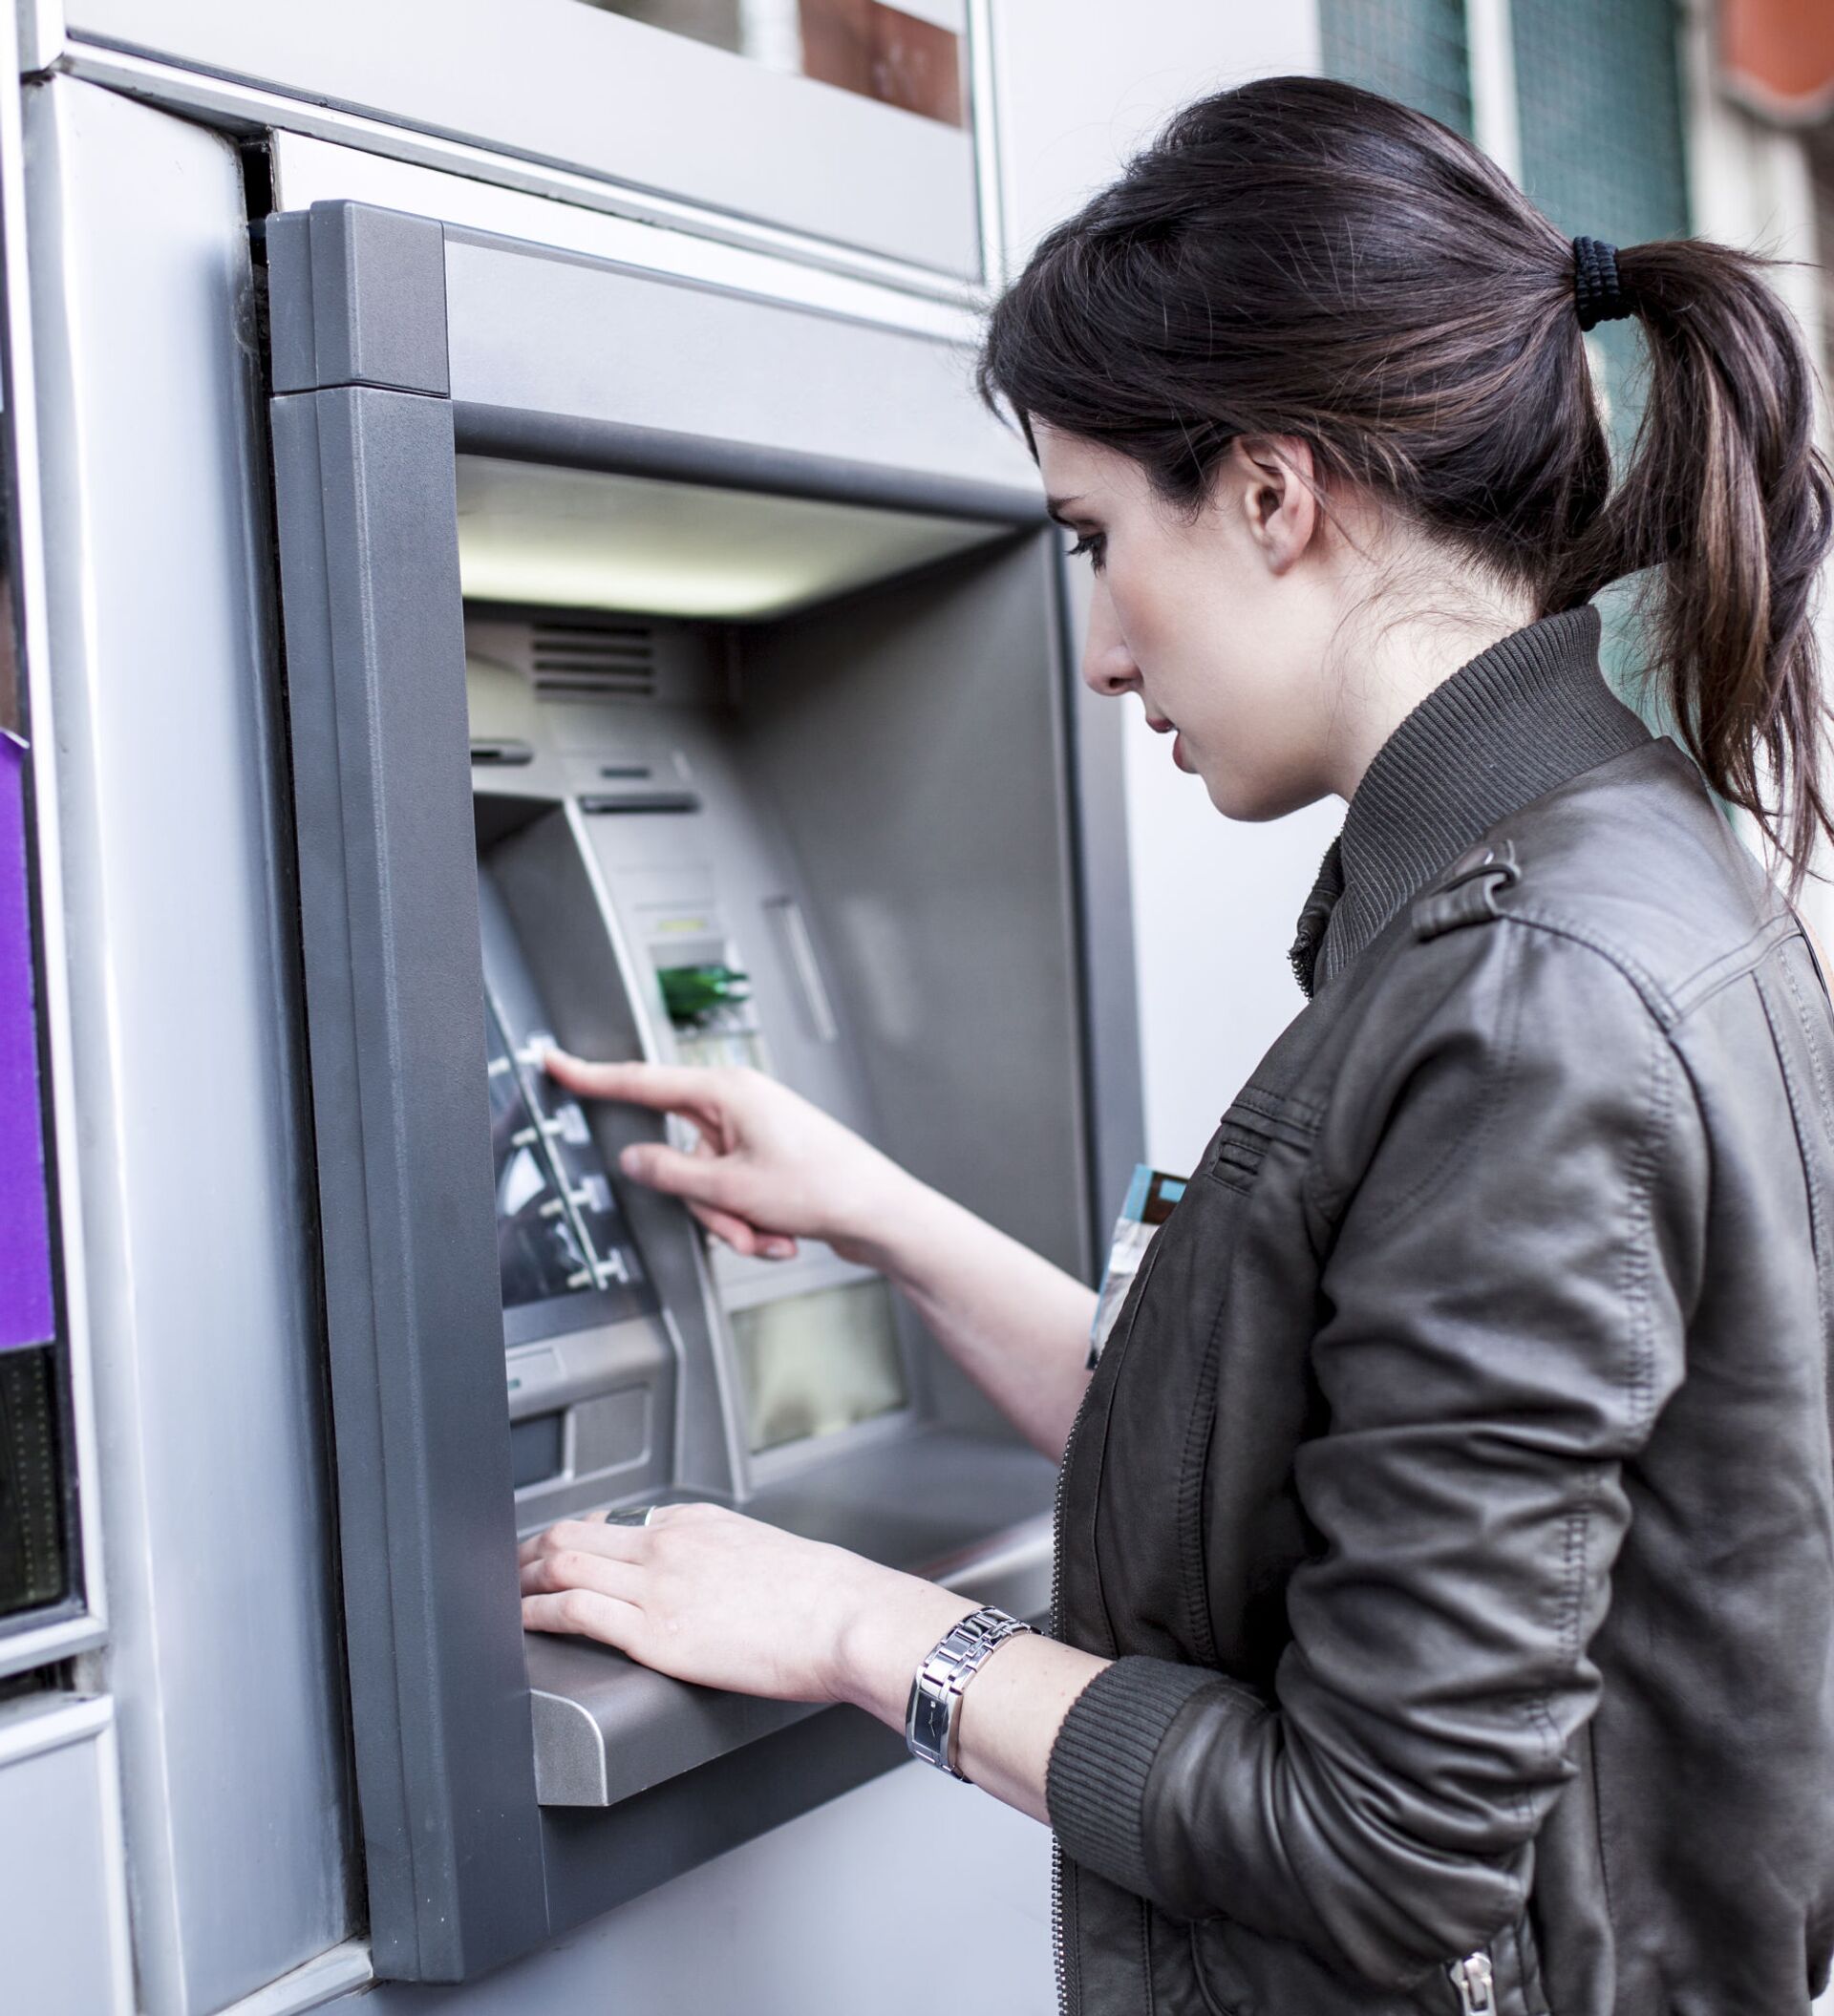 Люди снимают деньги со счетов. Банкомат. Человек у банкомата. Женщина у банкомата. Банкомат (ATM).